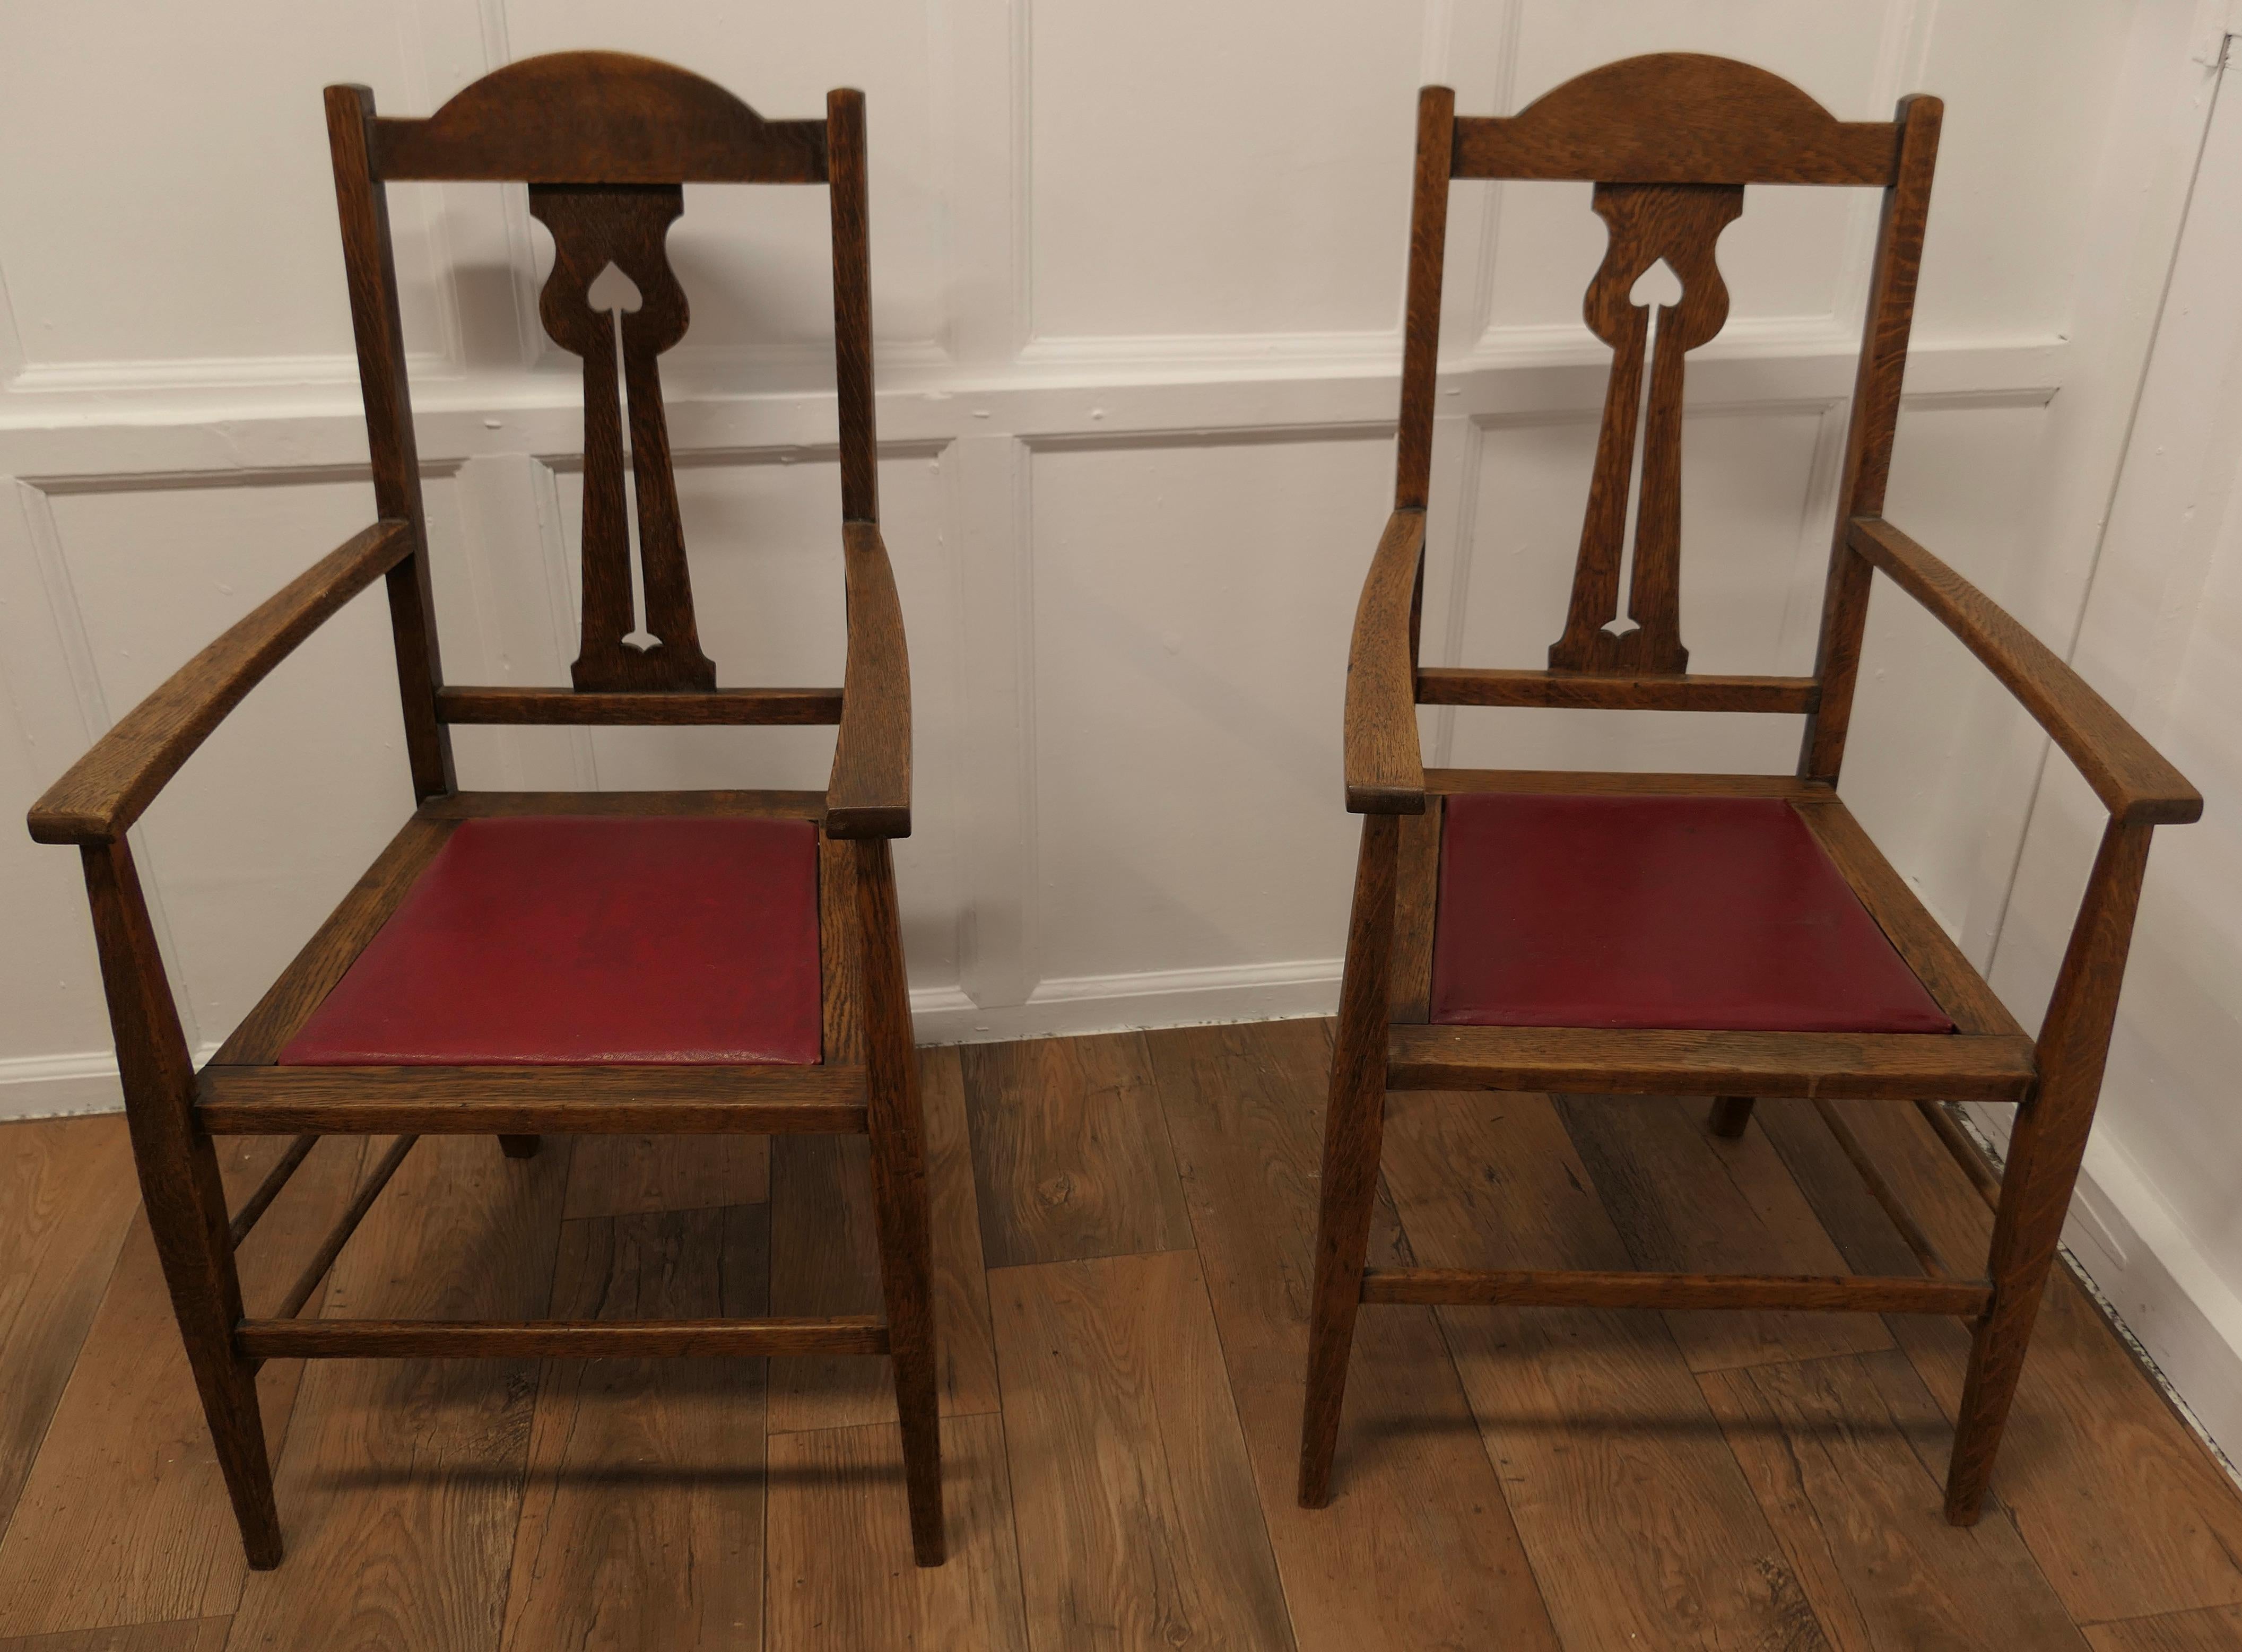 Fin du XIXe siècle Paire de chaises de sculpteur en chêne d'excellente qualité Arts and Crafts  Une bonne paire  